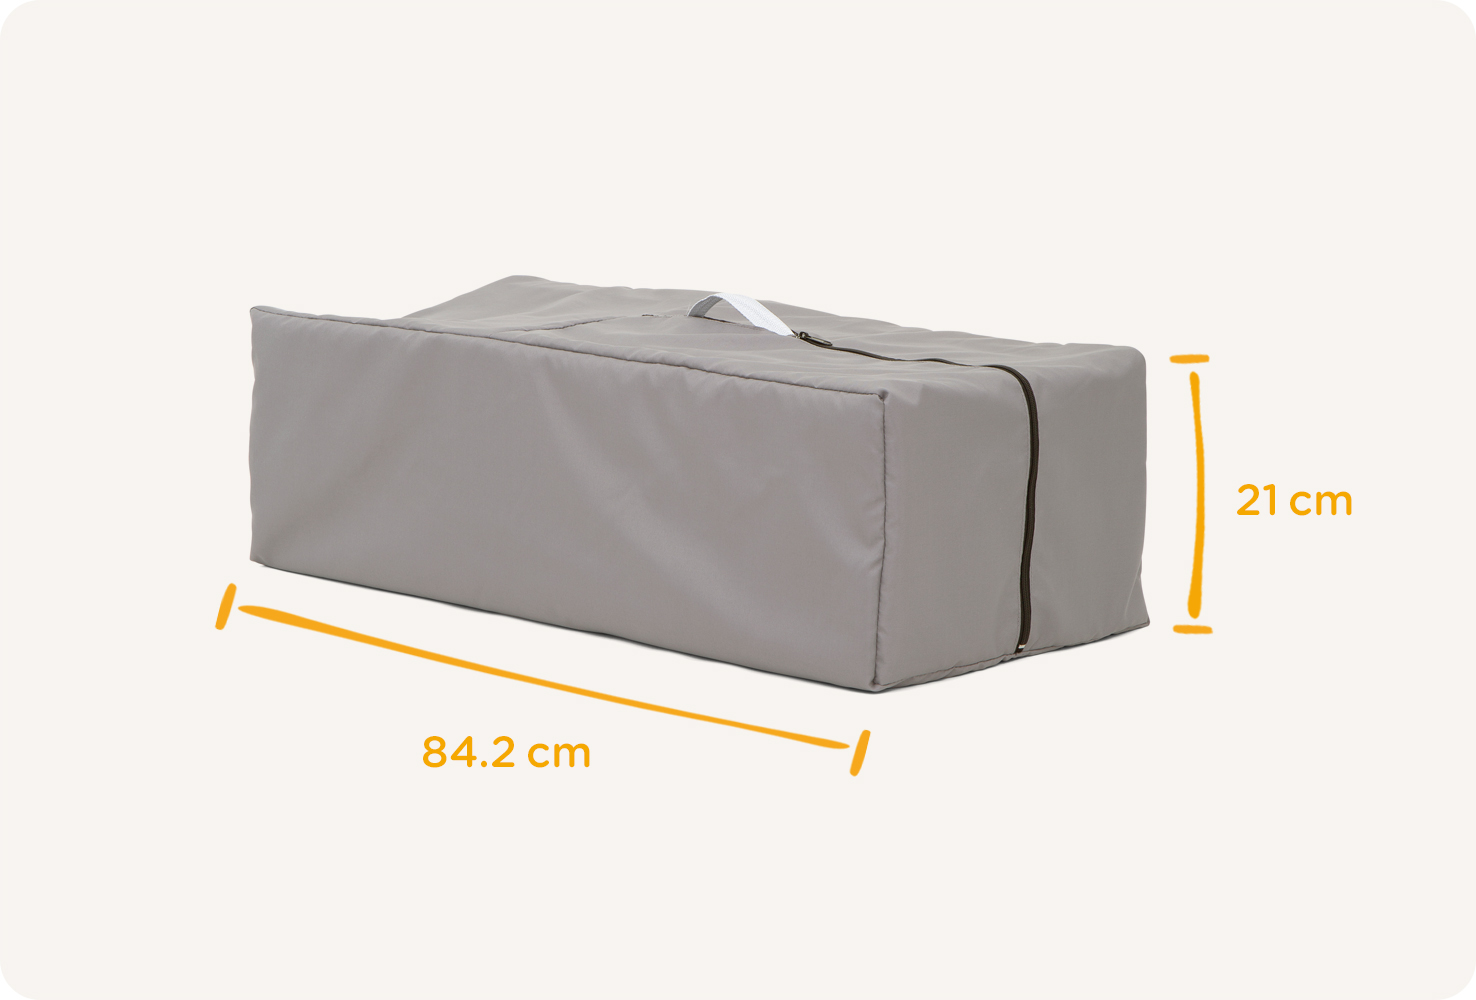 Le lit de voyage Joie commuter change & bouncer, rangé dans une housse de voyage avec la mesure de 84,2 cm en hauteur et 21 cm en largeur.